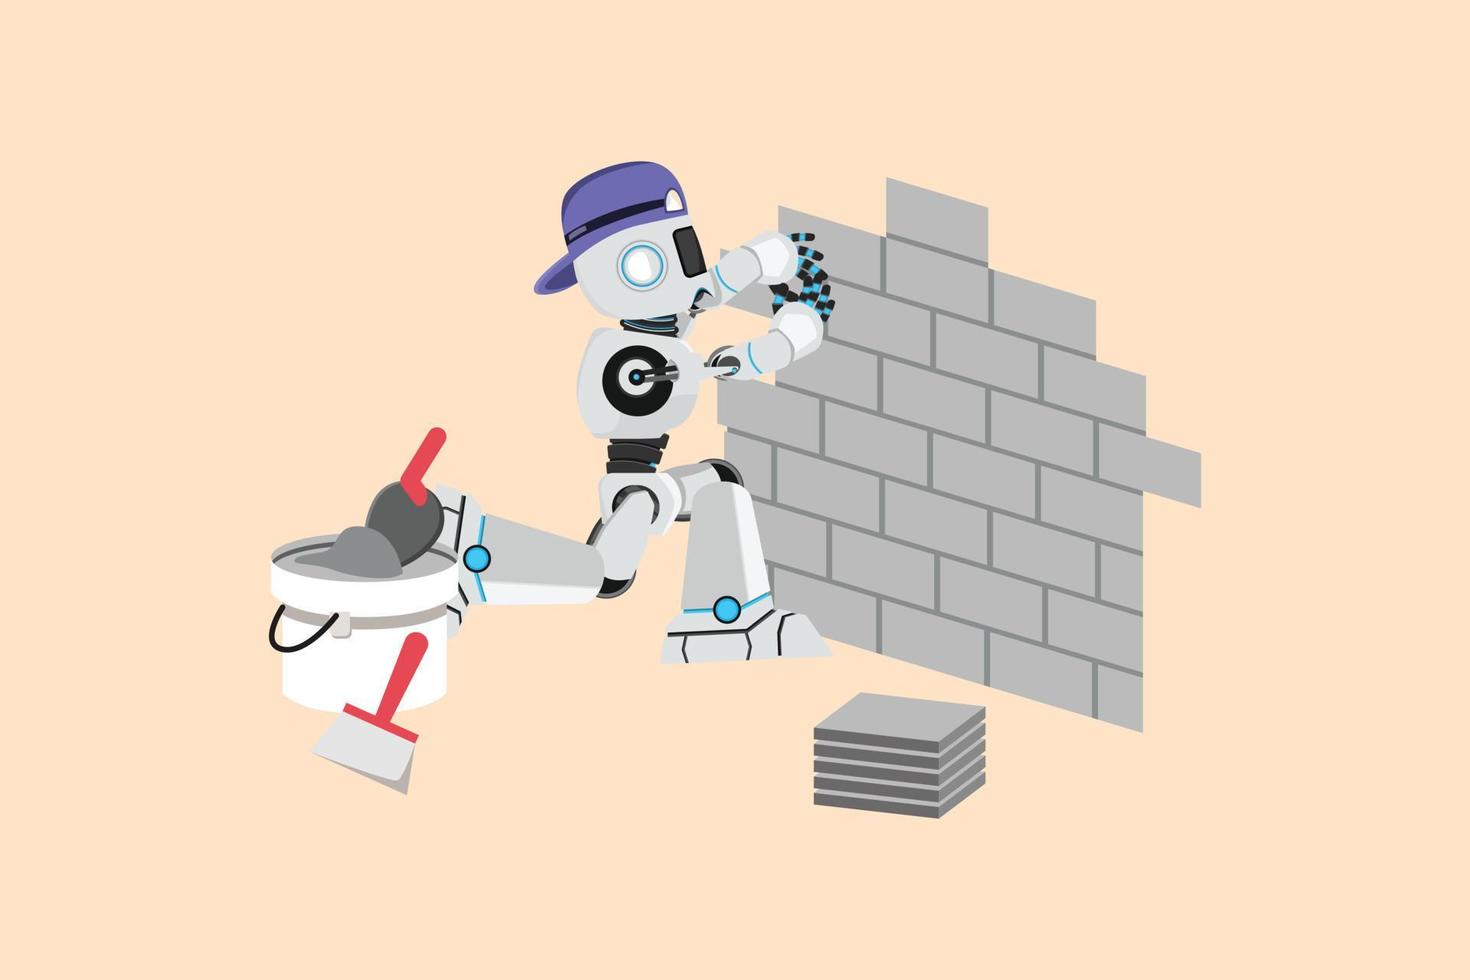 trabalhador de reparo de robô de desenho de estilo de desenho animado plano de negócios que coloca azulejos de parede de cerâmica. ladrilhador profissional trabalhando ladrilhos em casa. indústria de inteligência artificial de robôs. ilustração em vetor design gráfico